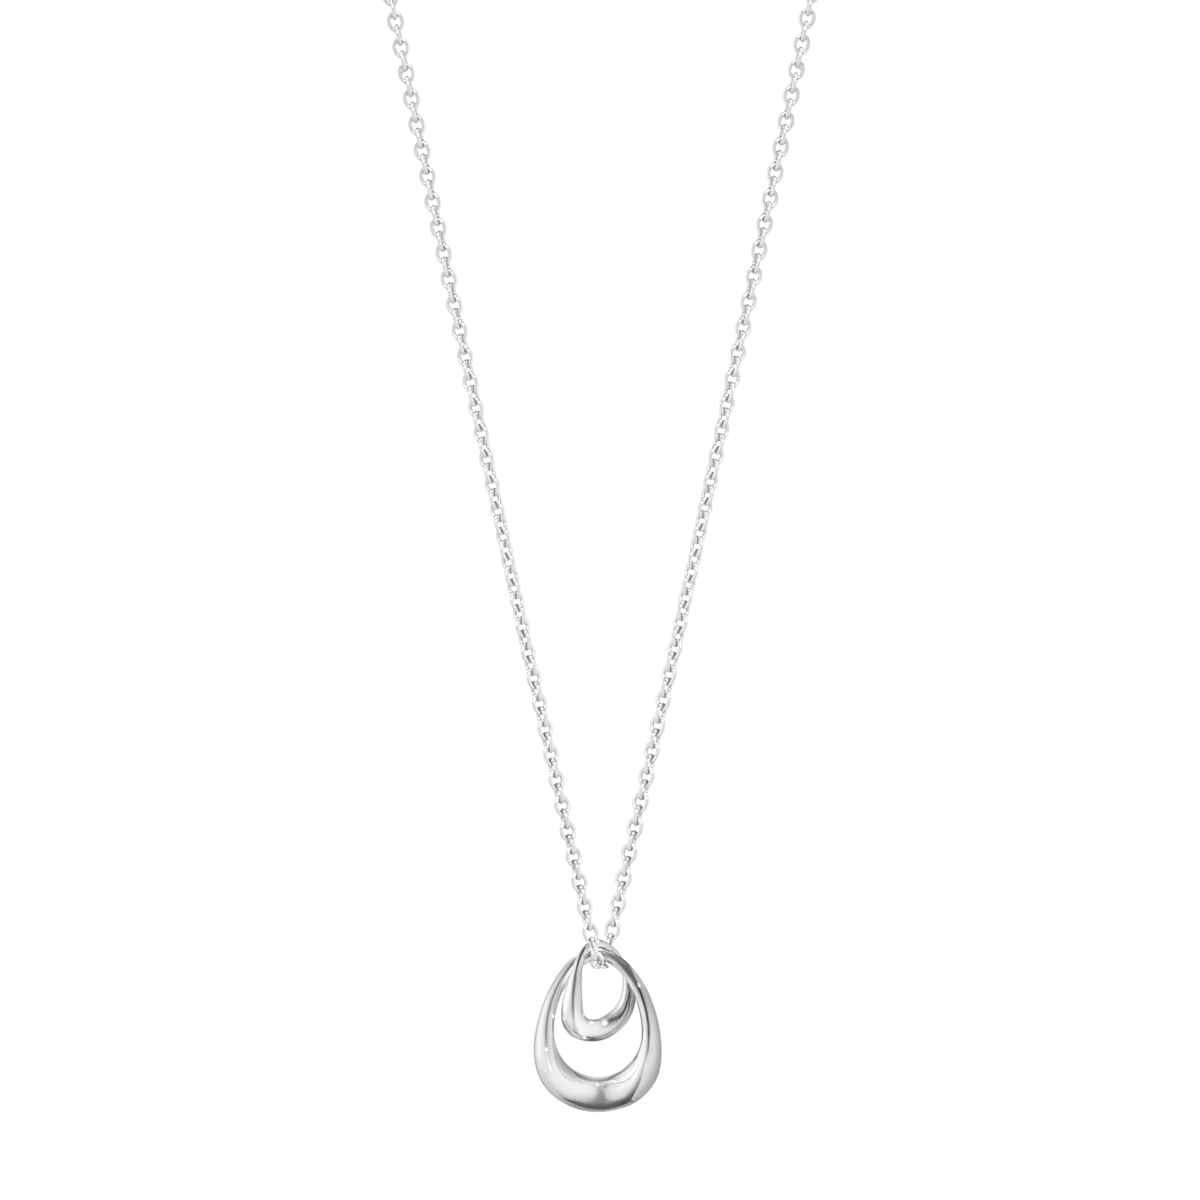 Offspring halskæde med lille vedhæng - sølv fra Georg Jensen